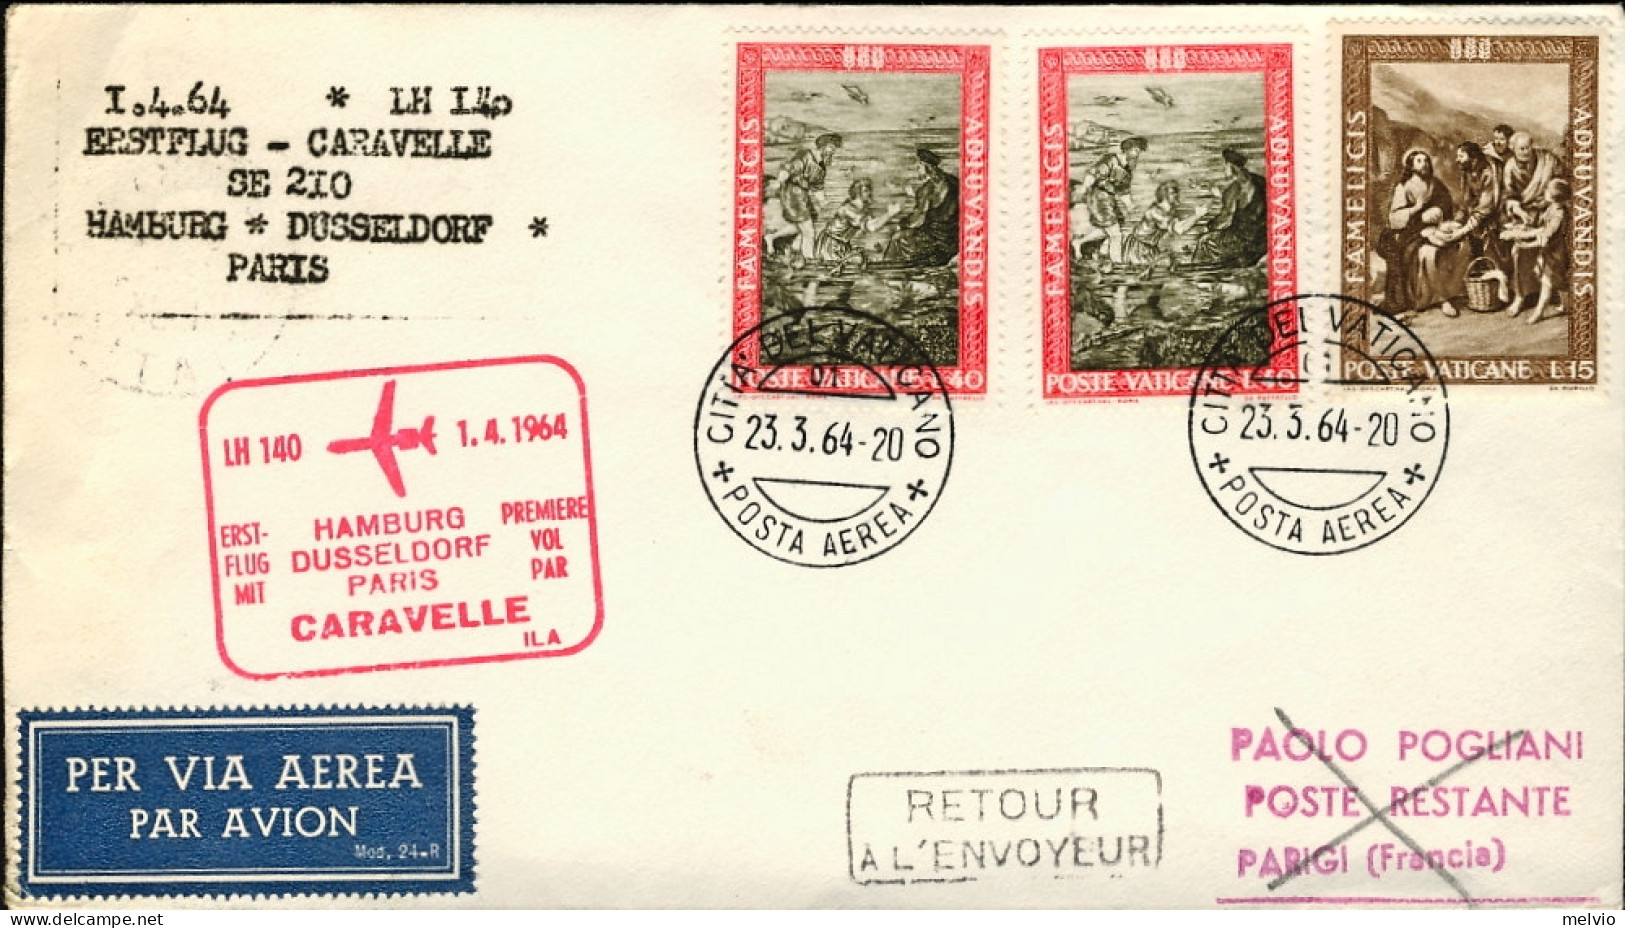 Vaticano-1964 I^volo Caravelle LH 140 Amburgo Dusseldorf Parigi Del 1 Aprile - Airmail